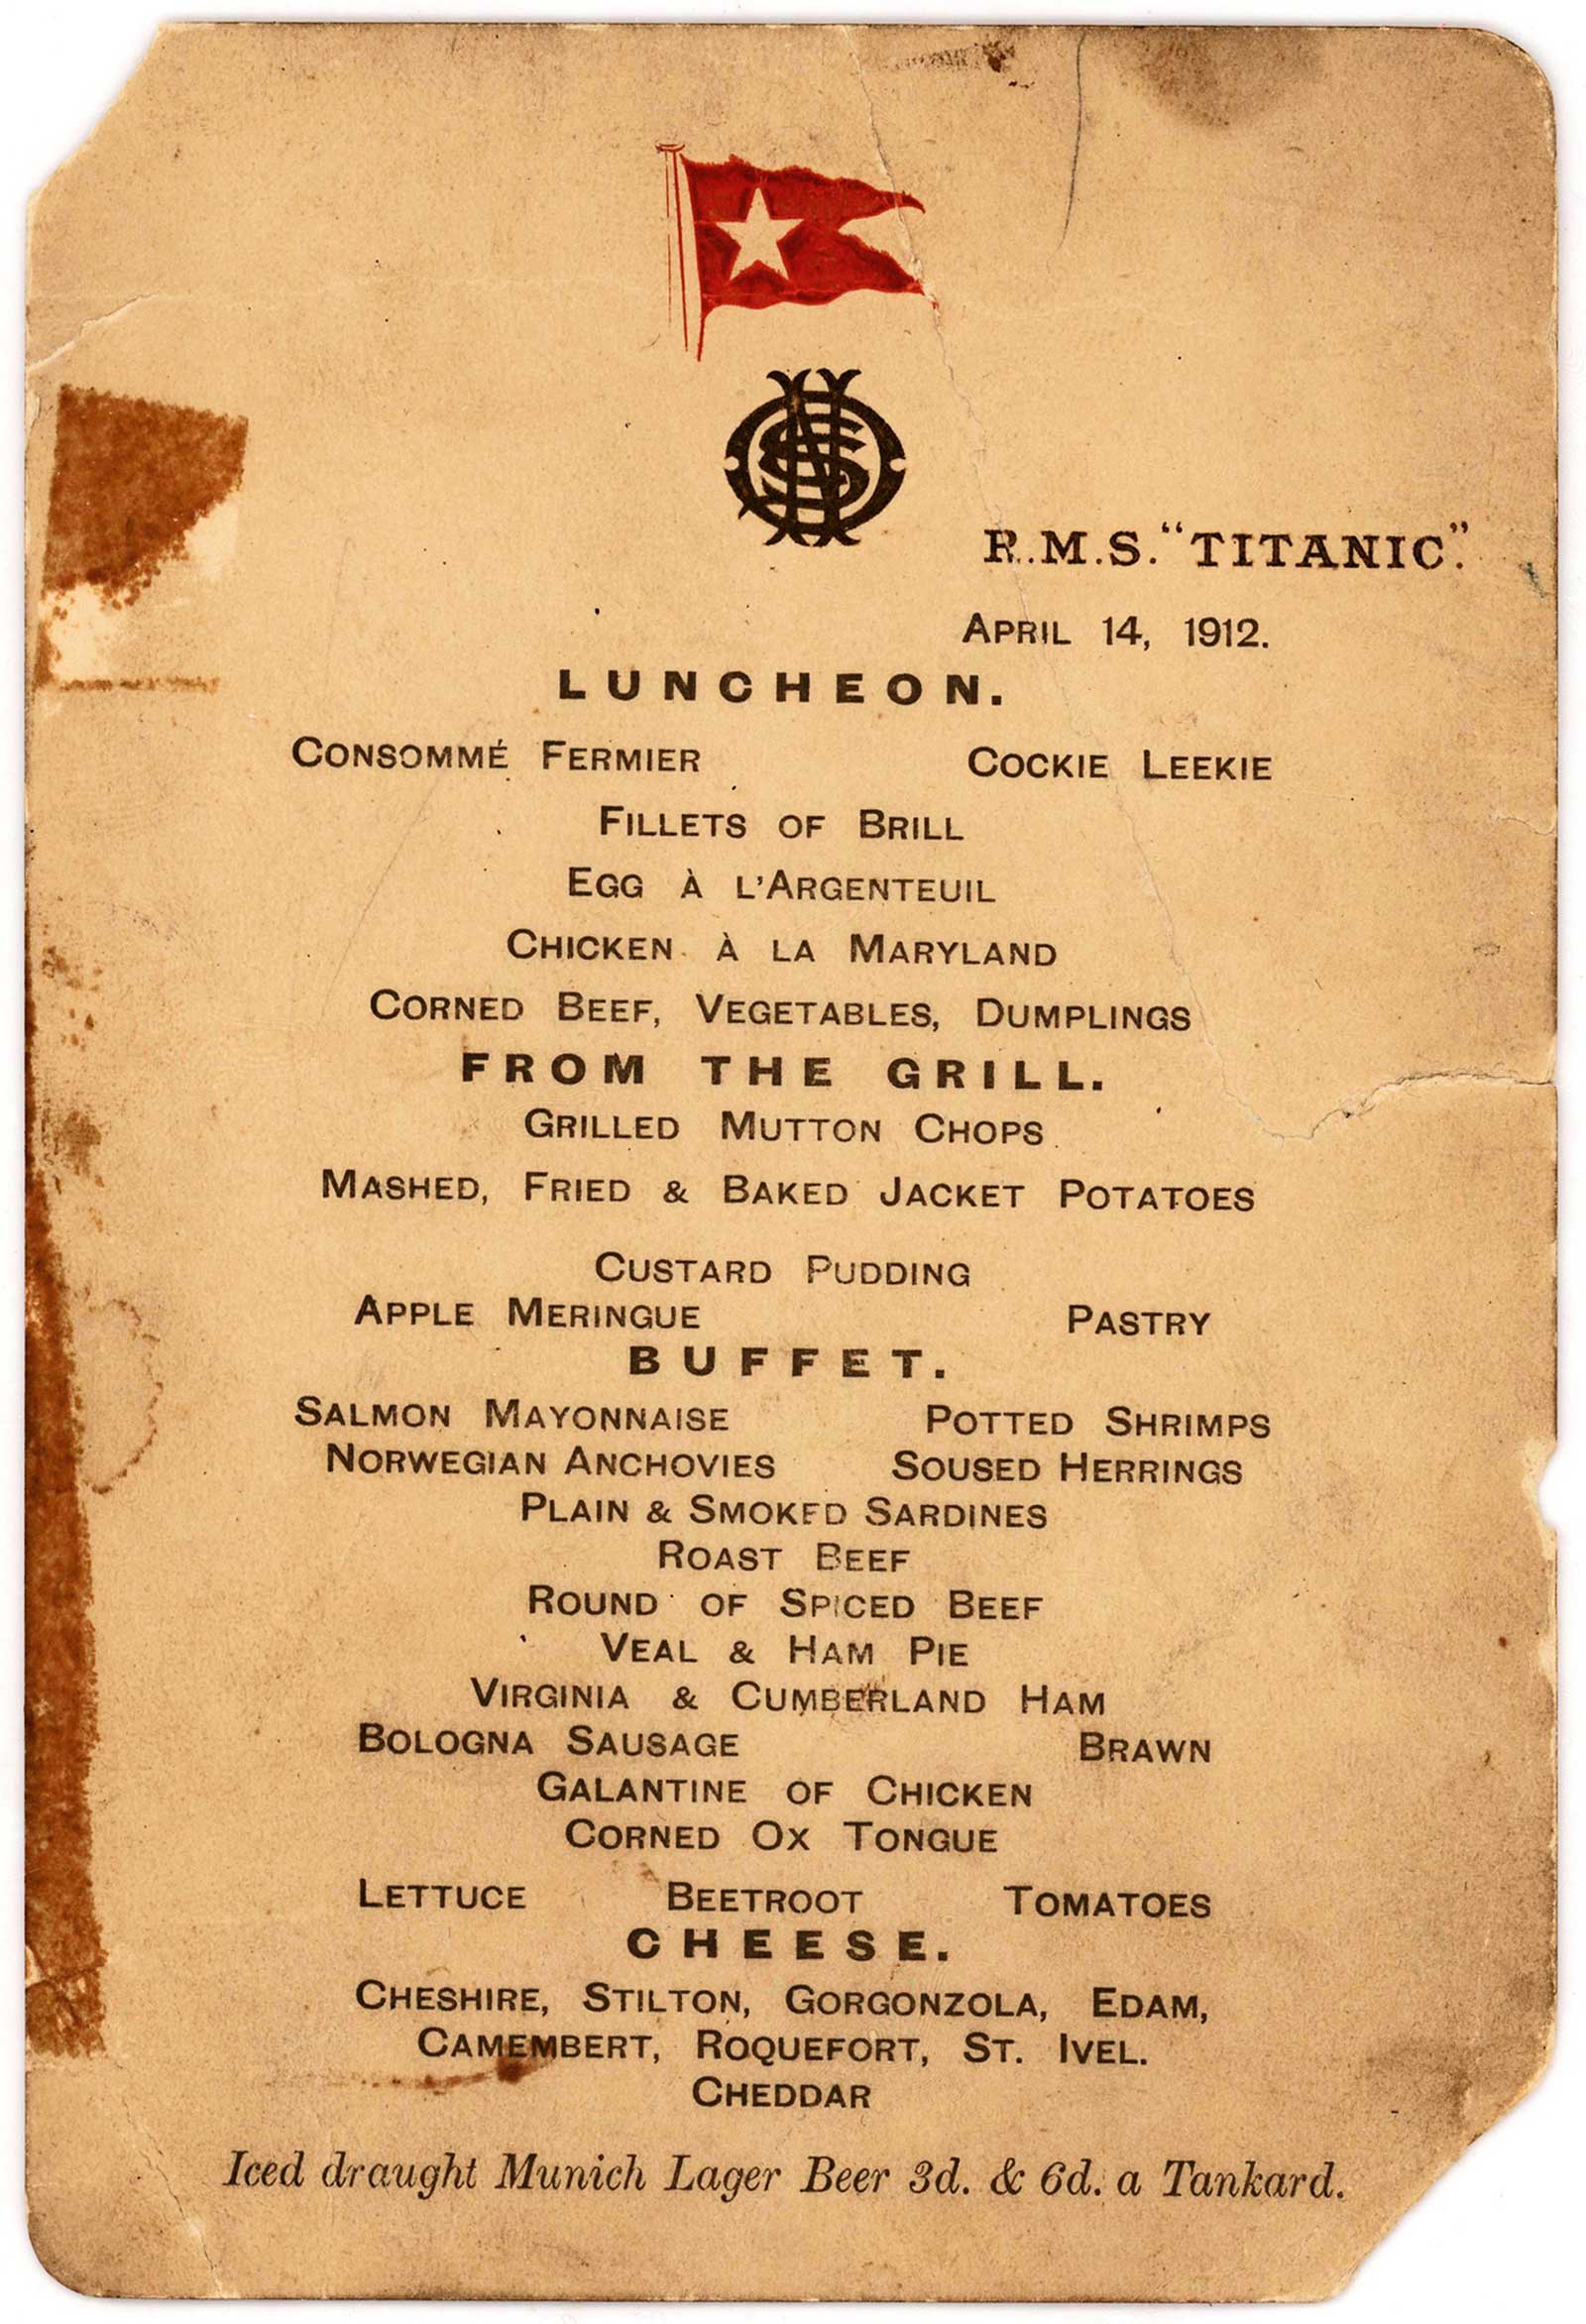 Titanic lunch menu auction